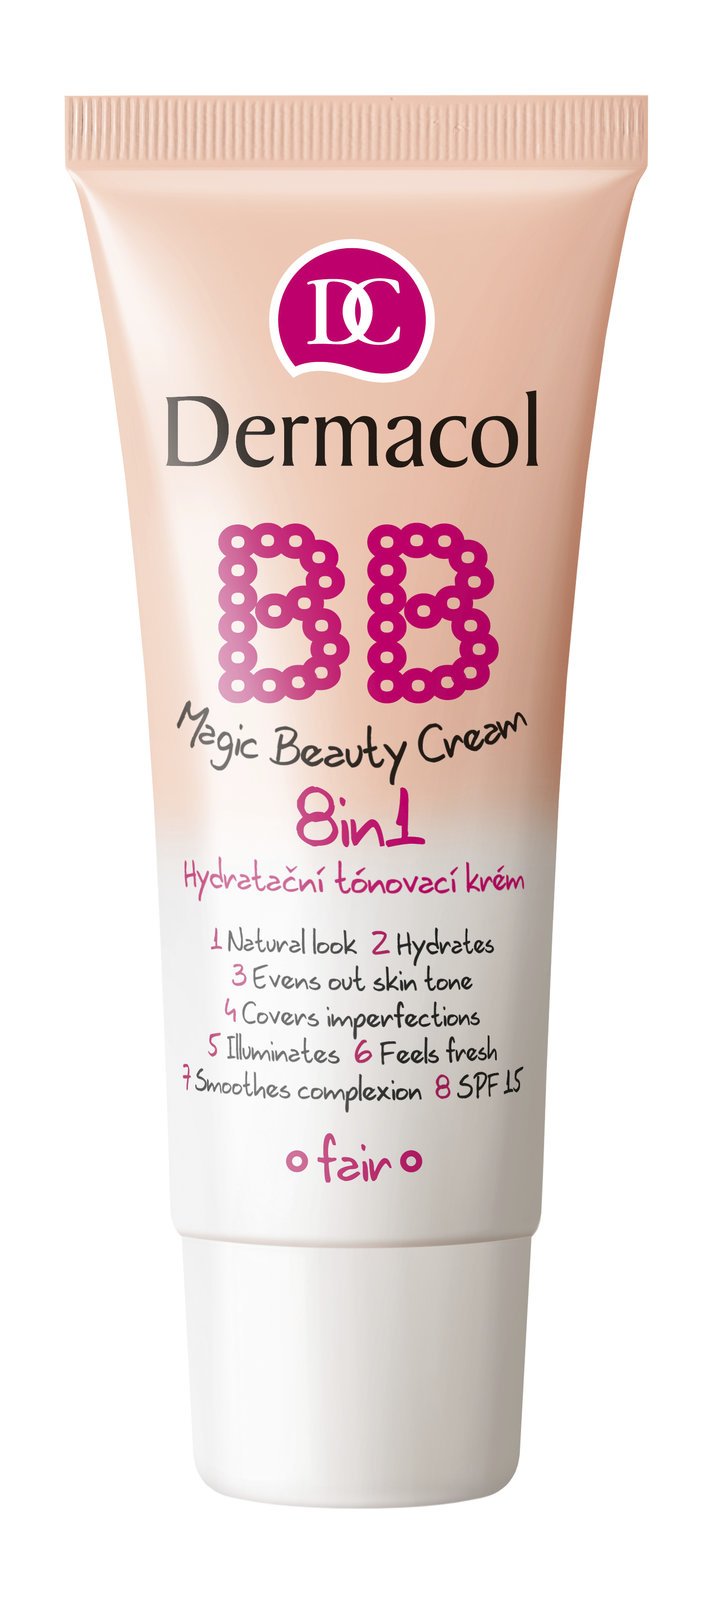 Hydratační tónovací krém 8v1, BB Magic Beauty Cream 8in1, Dermacol, 169 Kč.